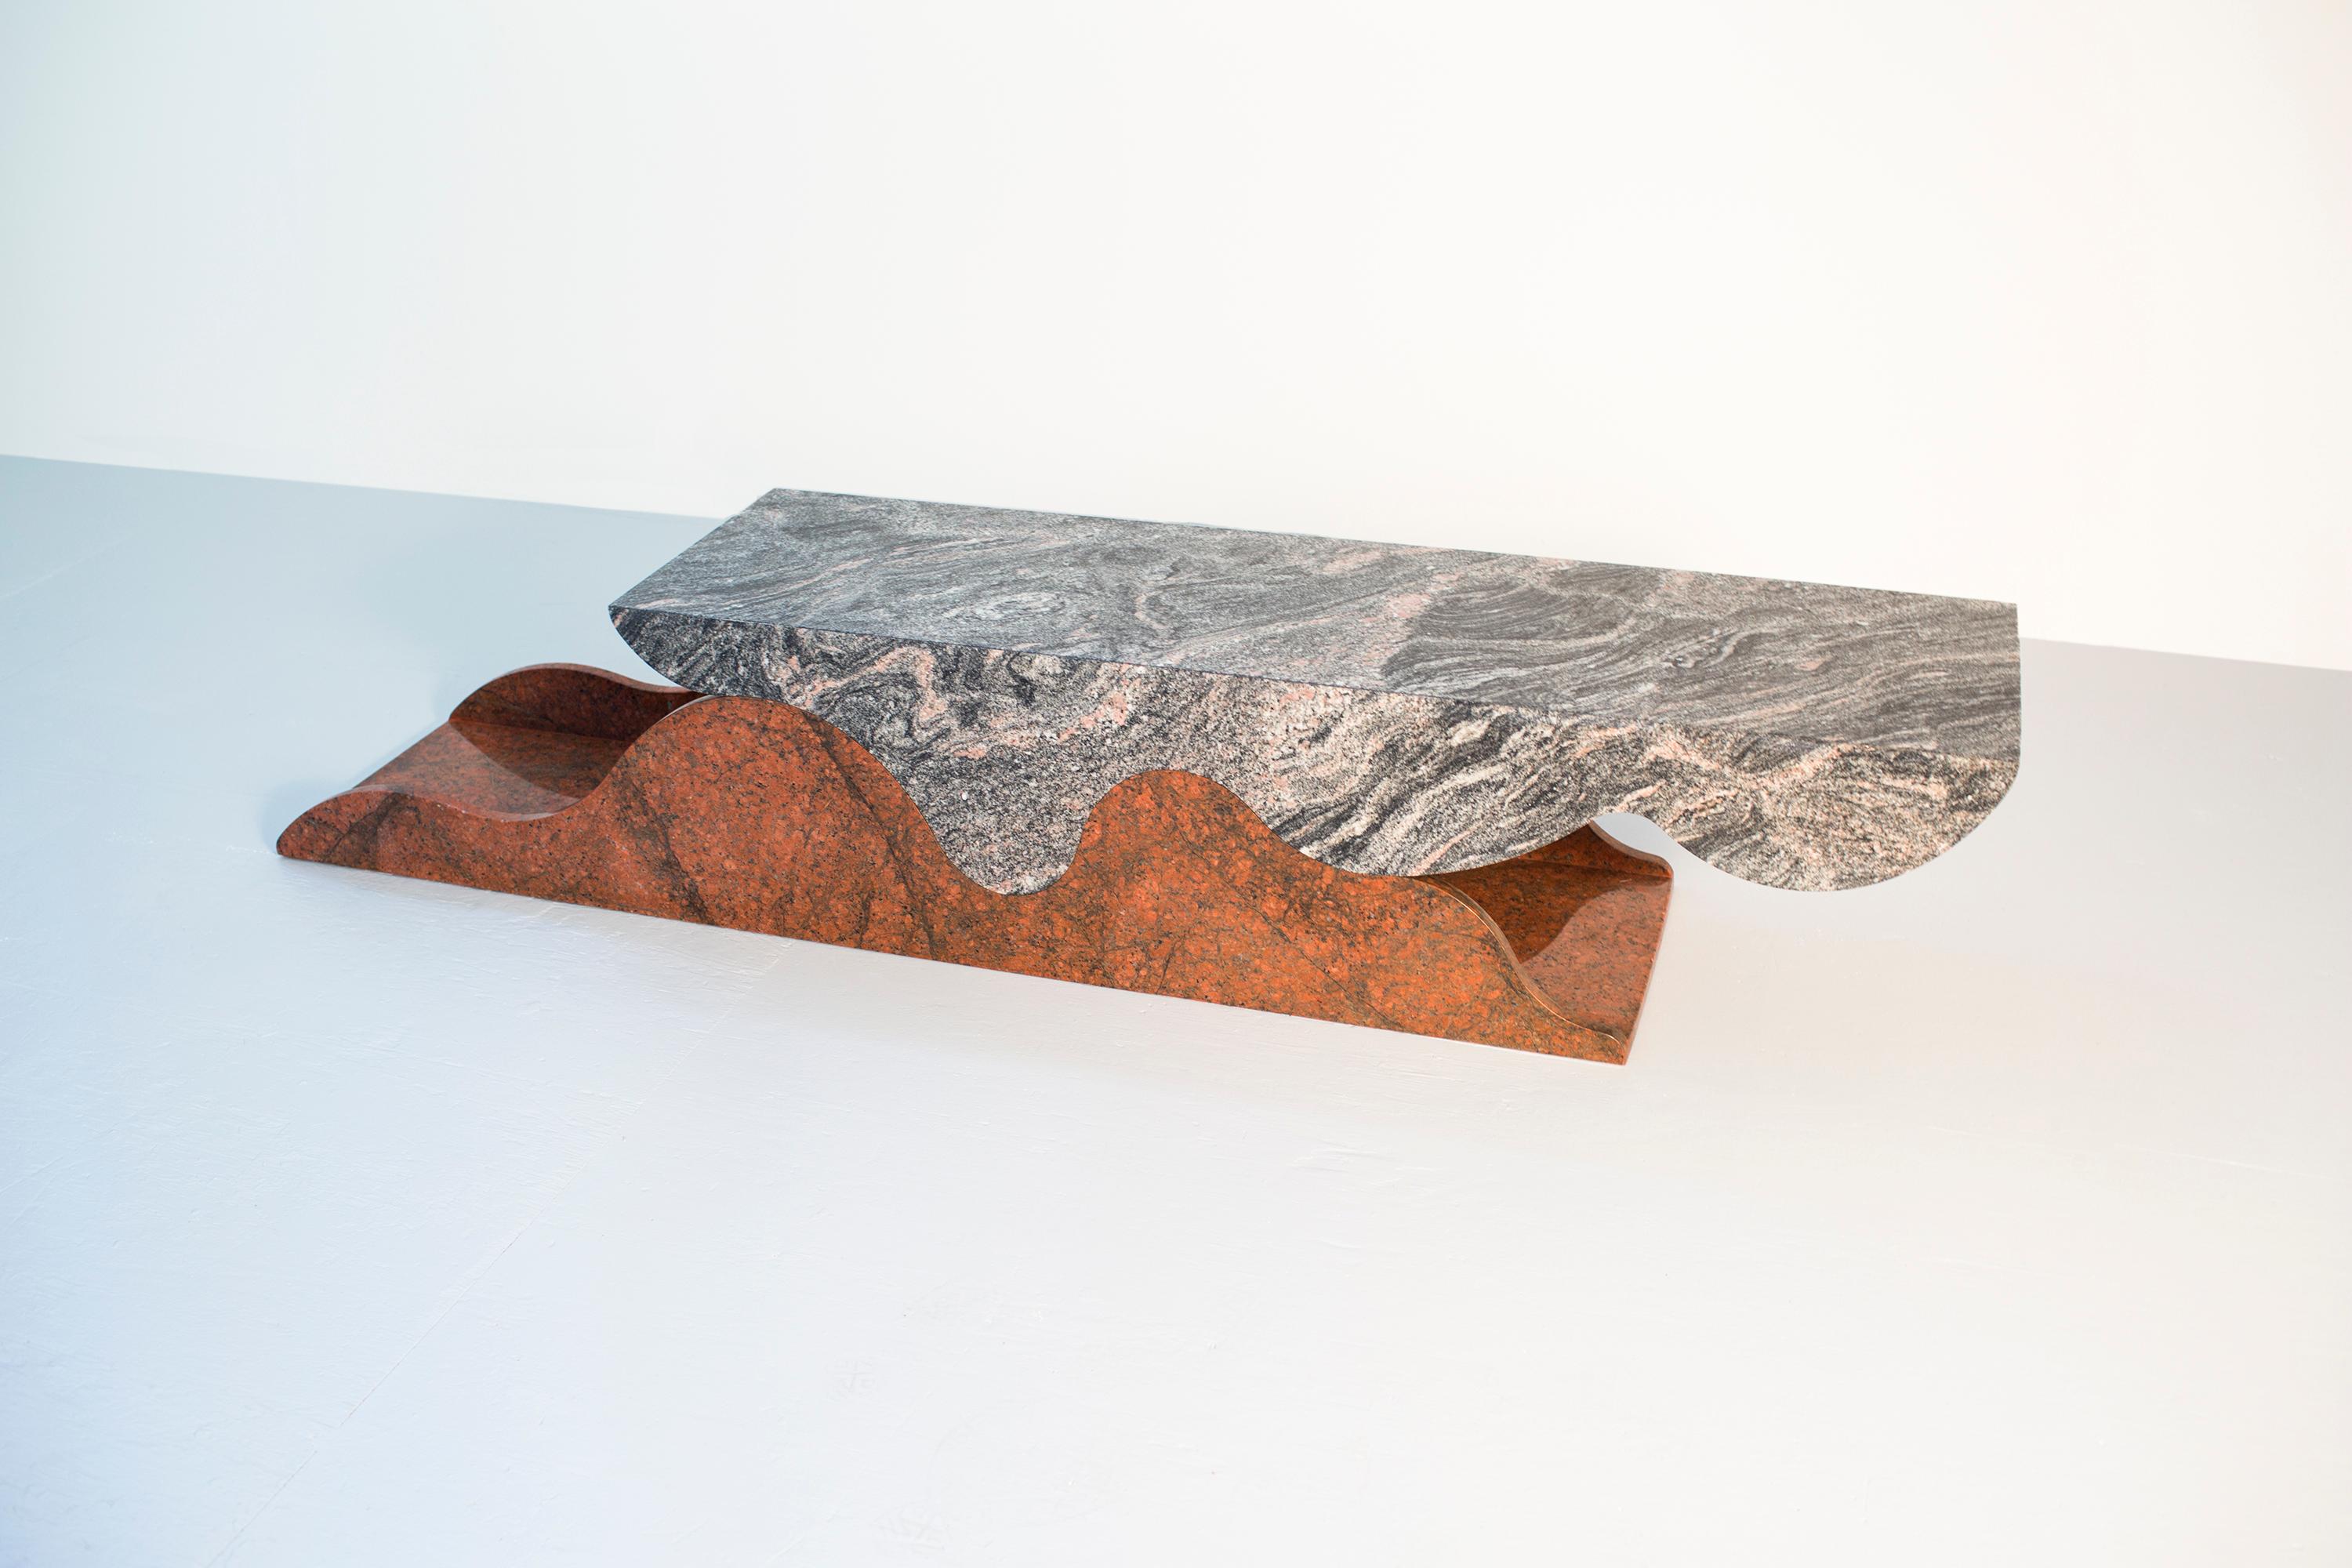 La table Gaspar est constituée de 2 pièces de granit formées pour se rejoindre, créant ainsi une surface à hauteur de table basse ou de console.

L'intérieur de la table peut être utilisé pour ranger des articles tels que des magazines ou divers